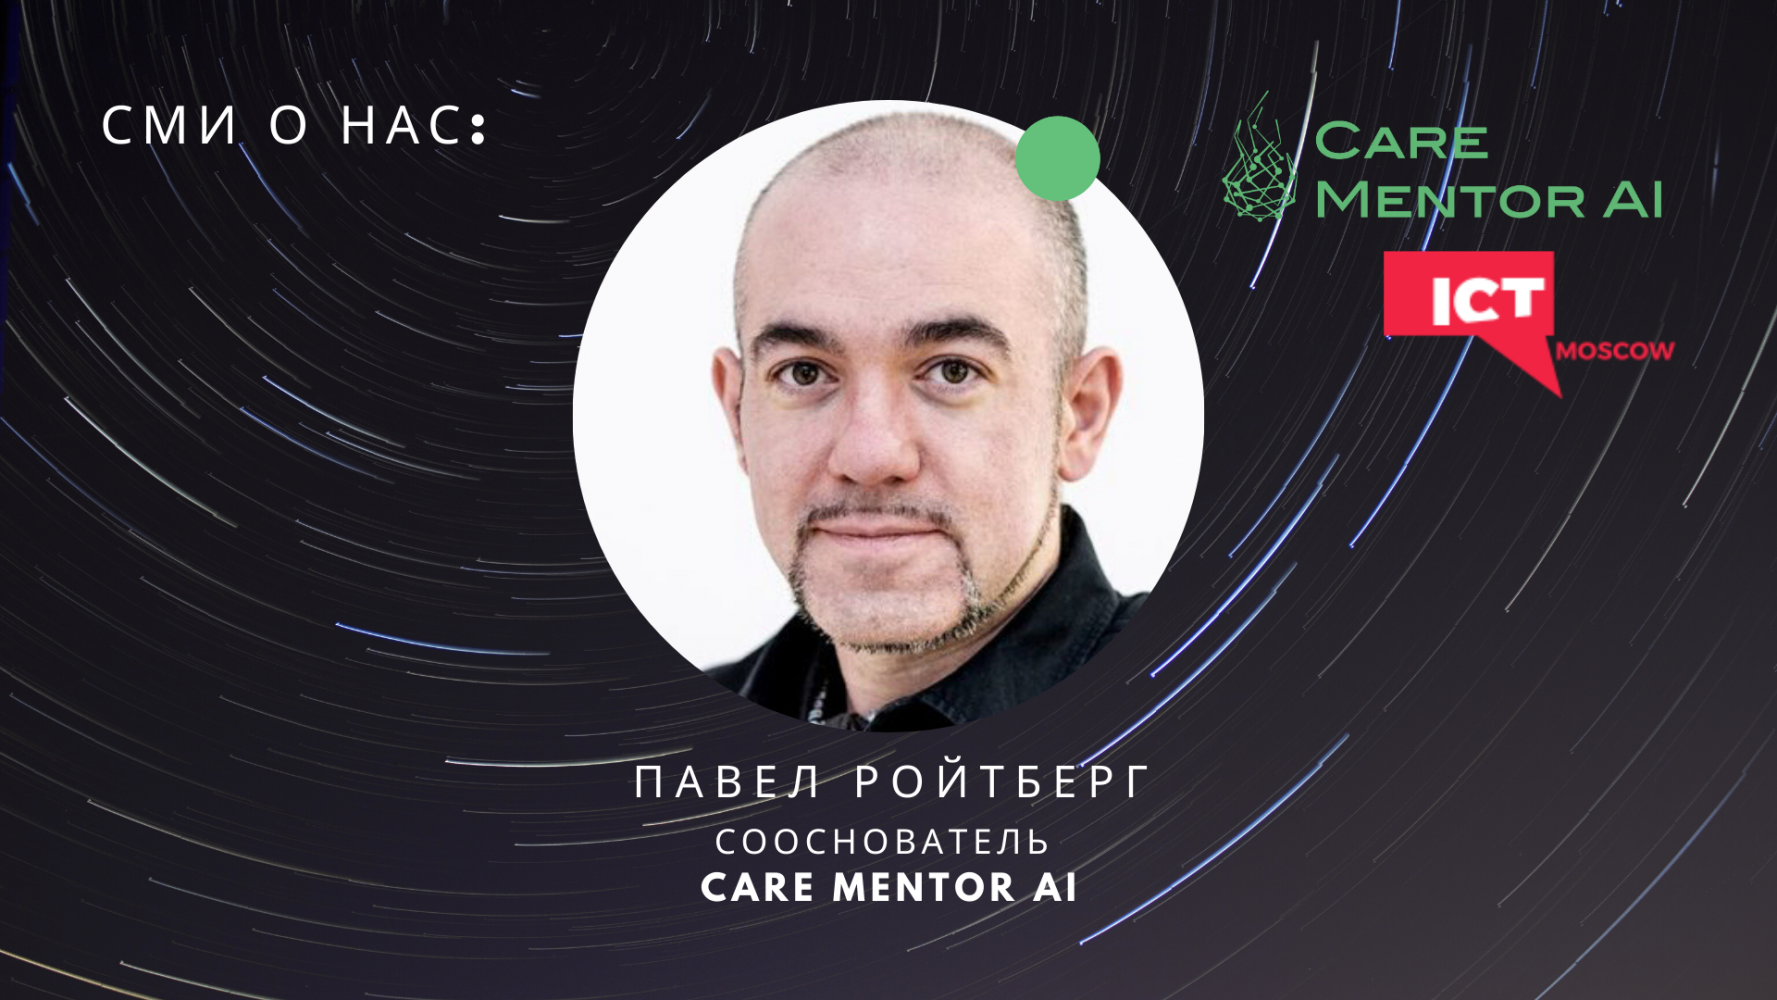 Павел Ройтберг, сооснователь Care Mentor AI, делится экспертным мнением в статье "Технологии против пандемии"  на ICT.Moscow